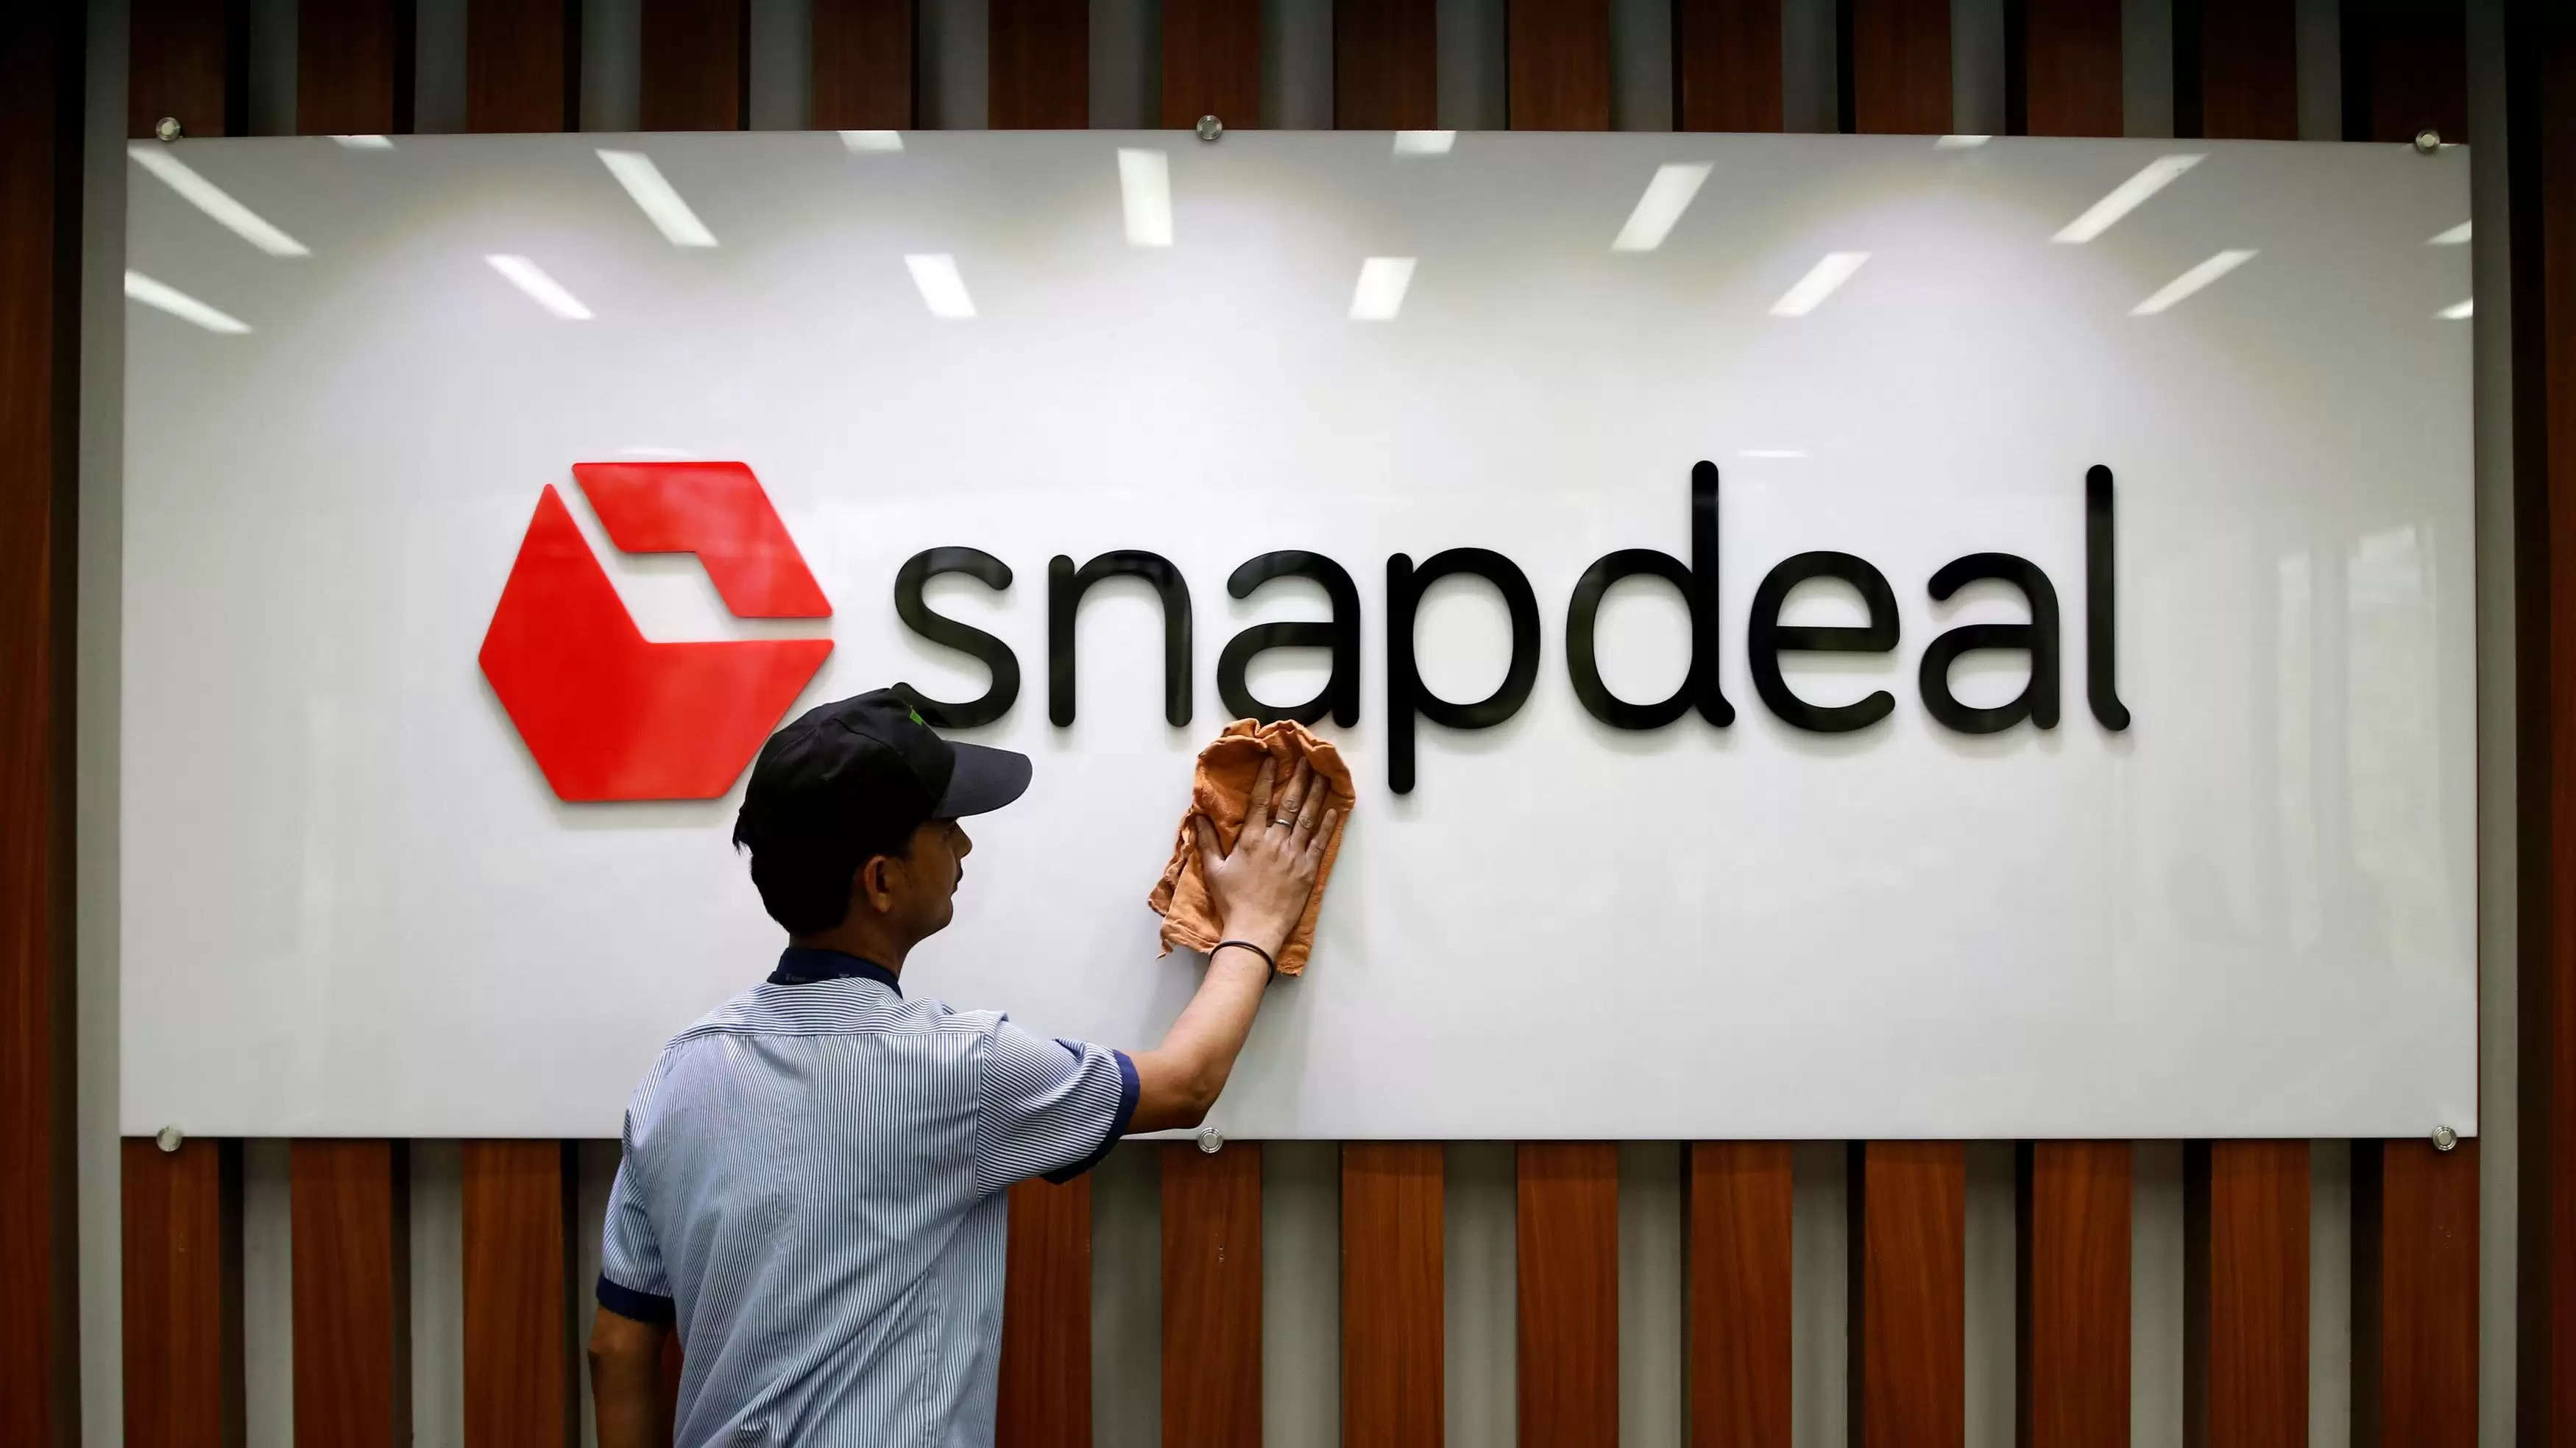 अब प्लाज्मा डोनर ढूंढना आसान होगा, Snapdeal ने एक विशेष ऐप लॉन्च किया है जो मदद करेगा